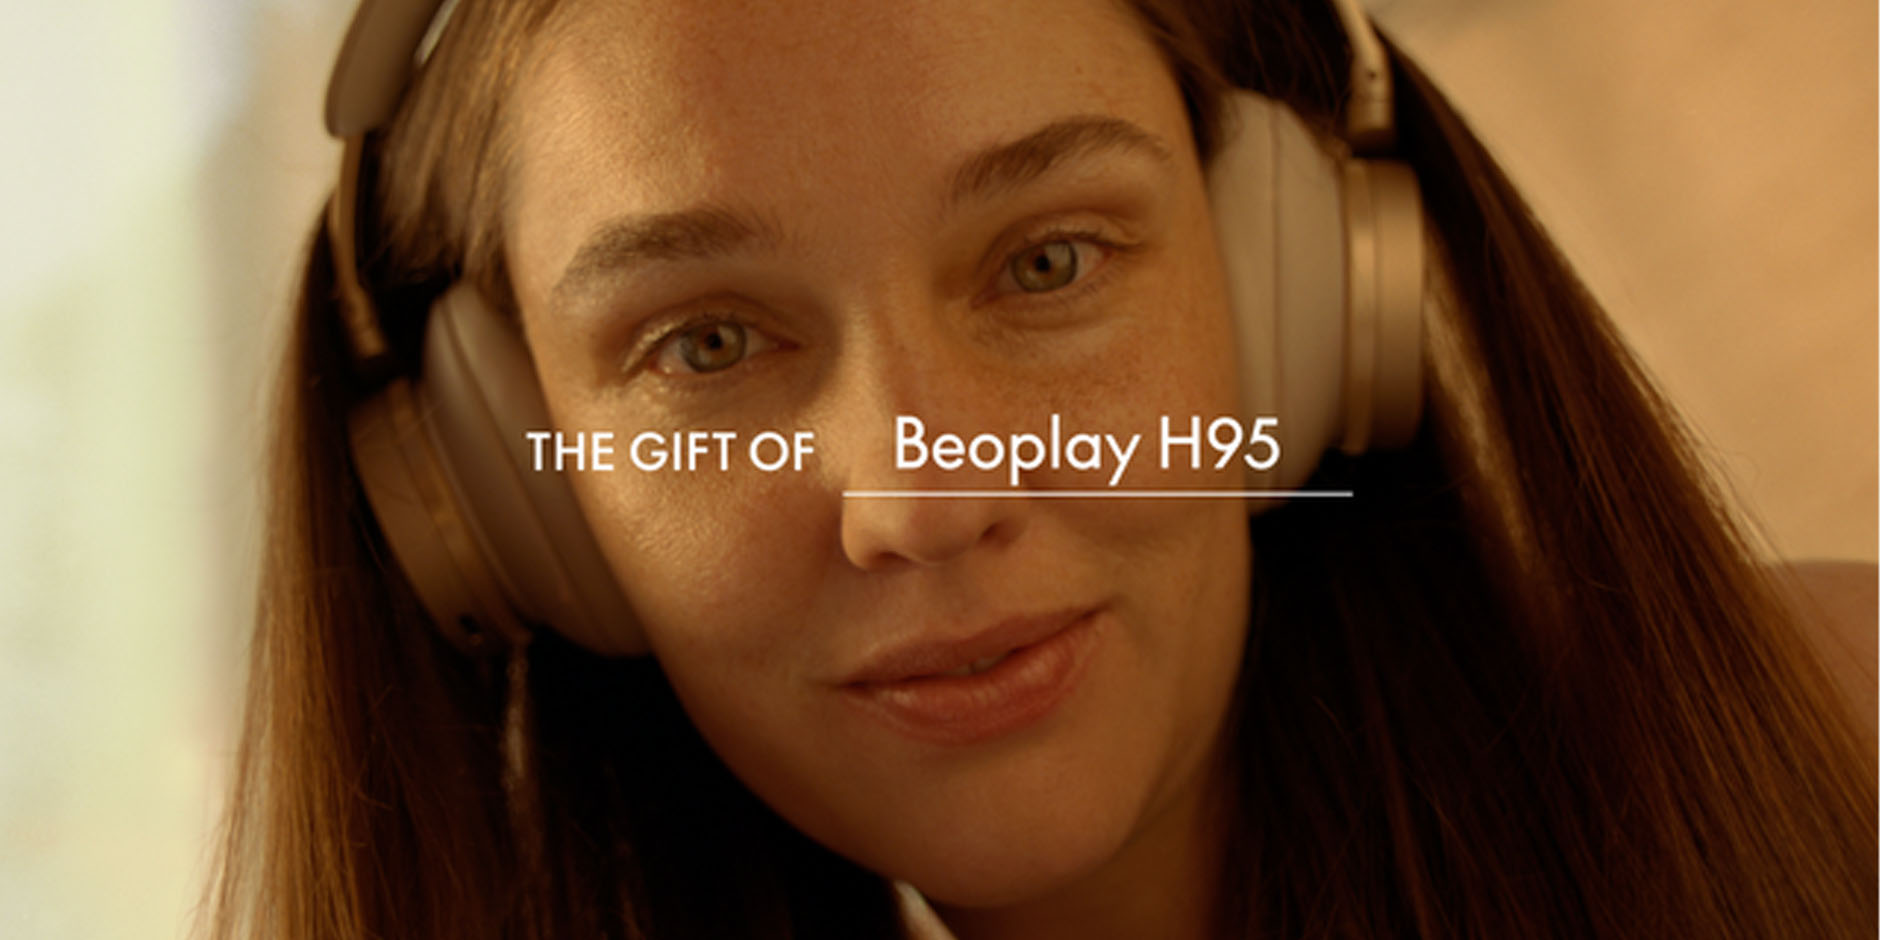 Beoplay H95 headphones